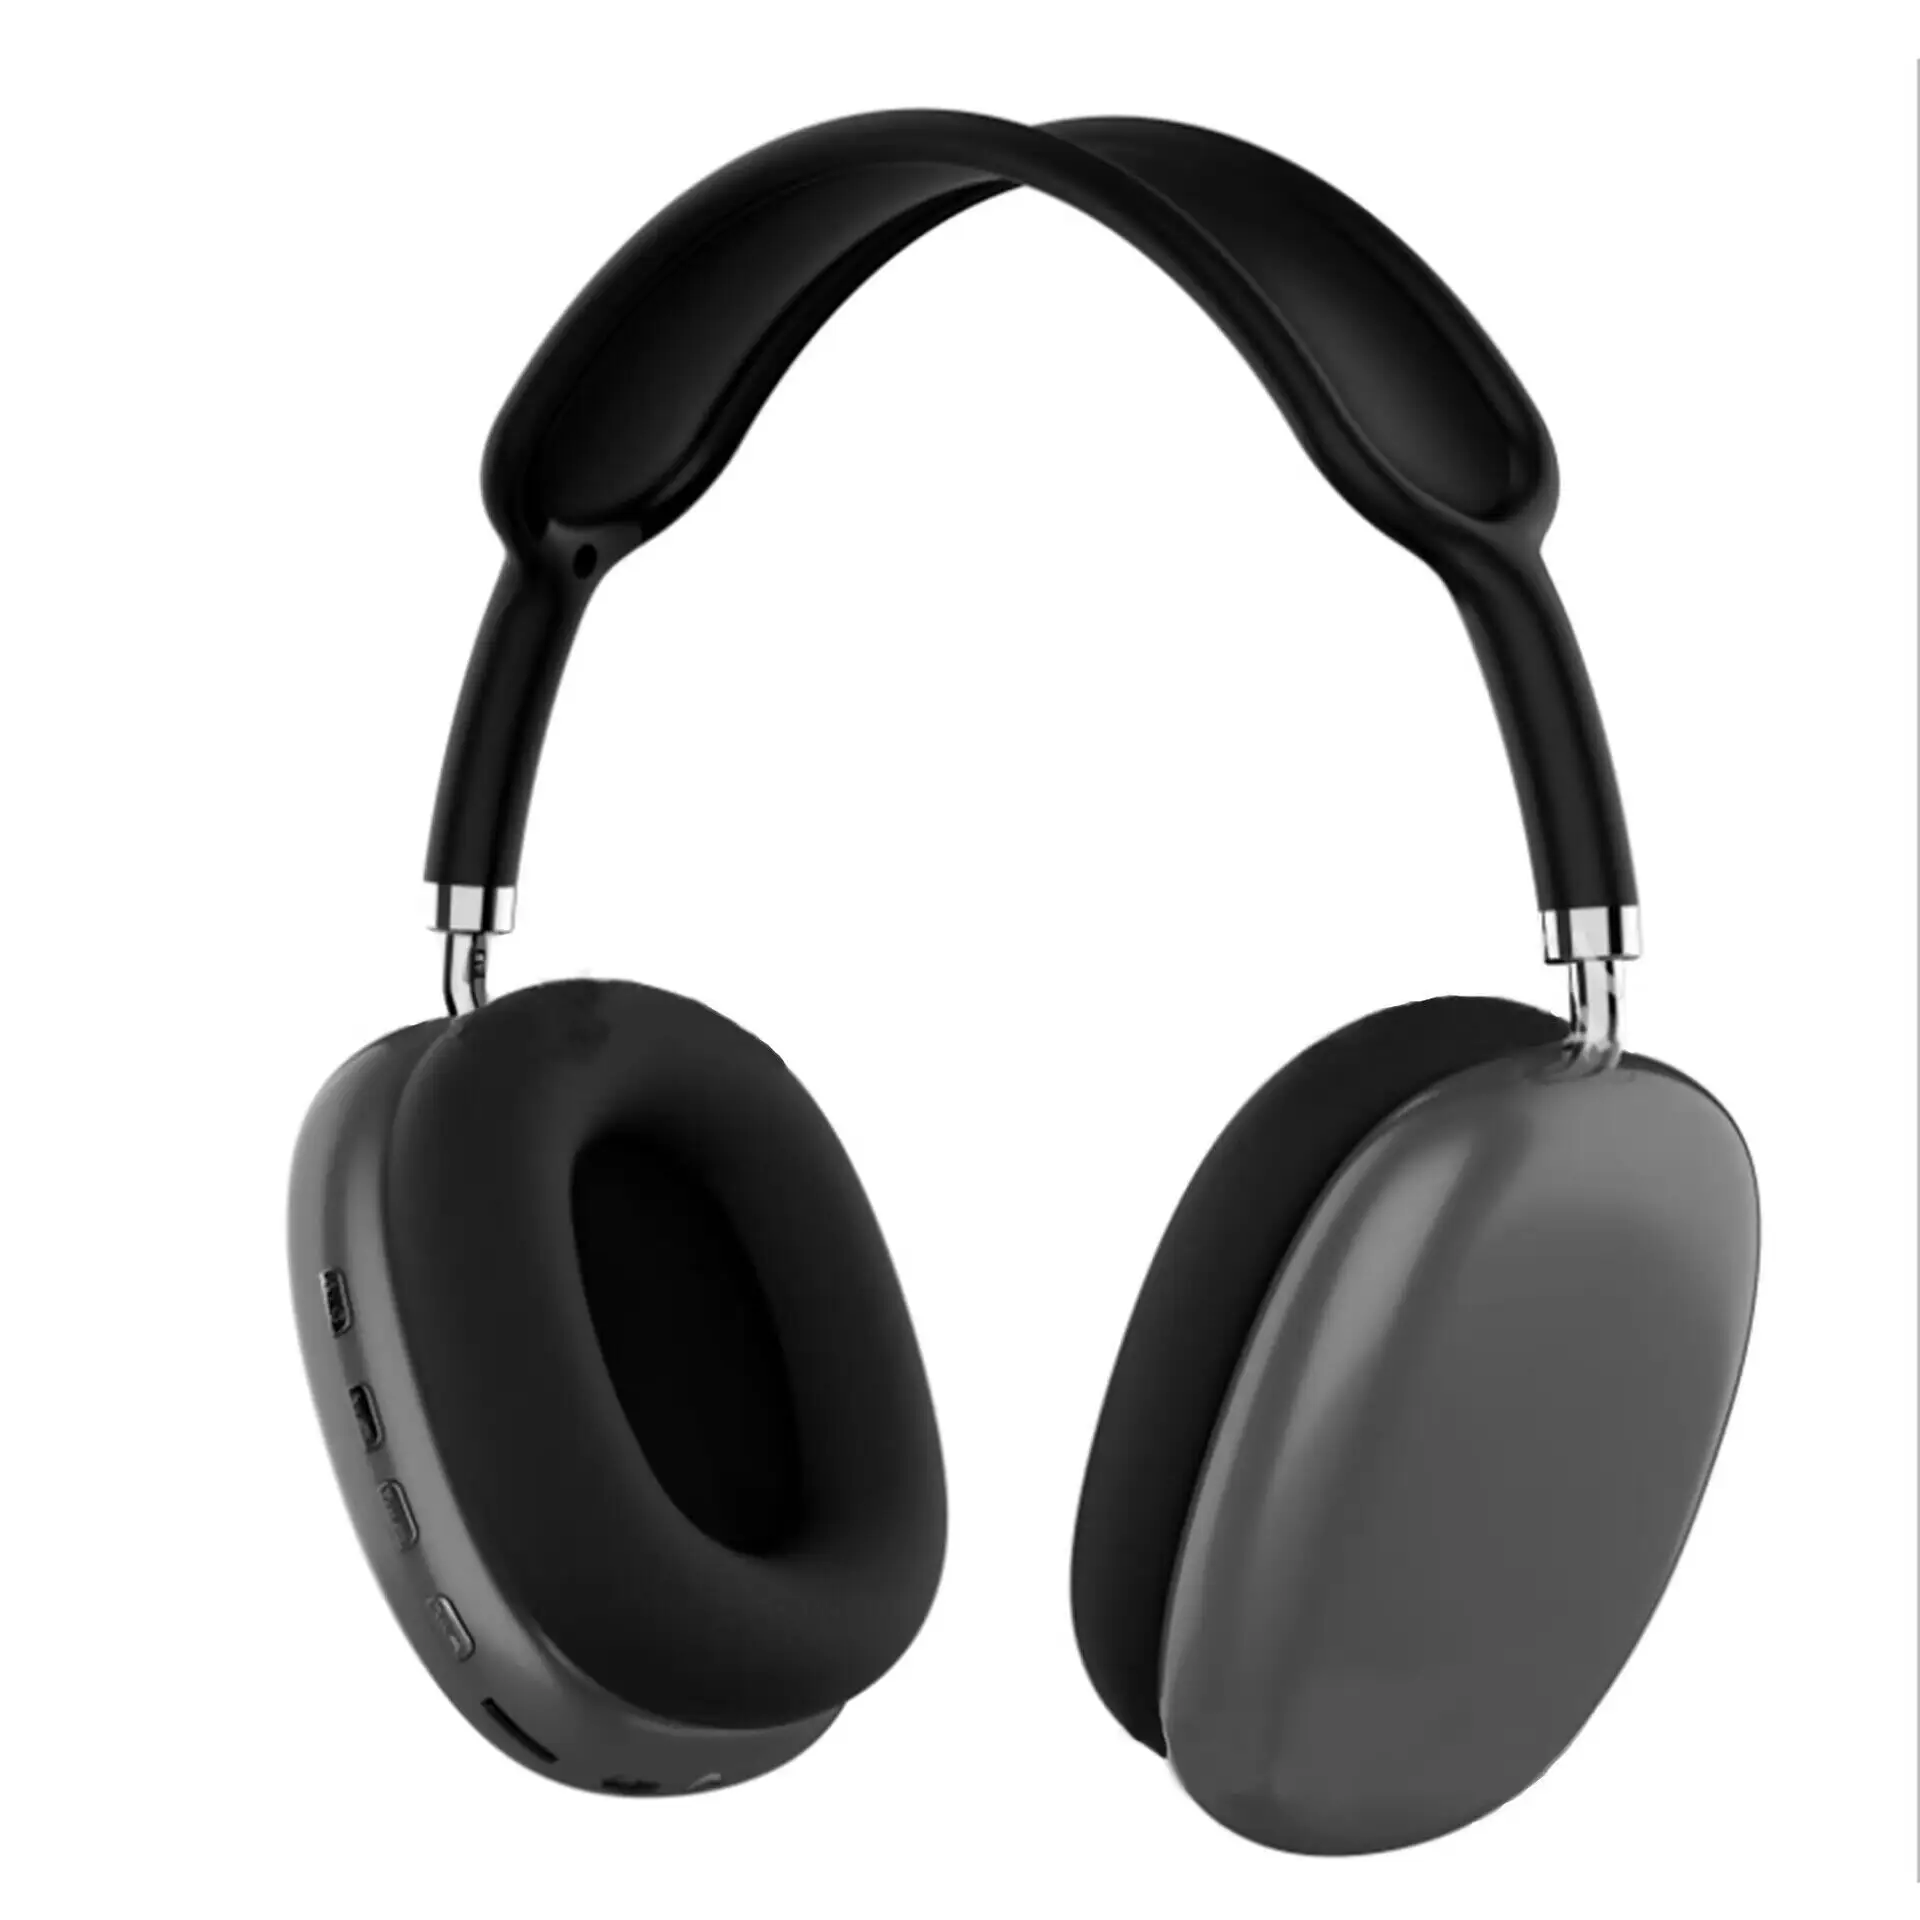 P9 Air Max Wireless Bluetooth Headphones Over Ear, Lightweight Headset with Deep Bass